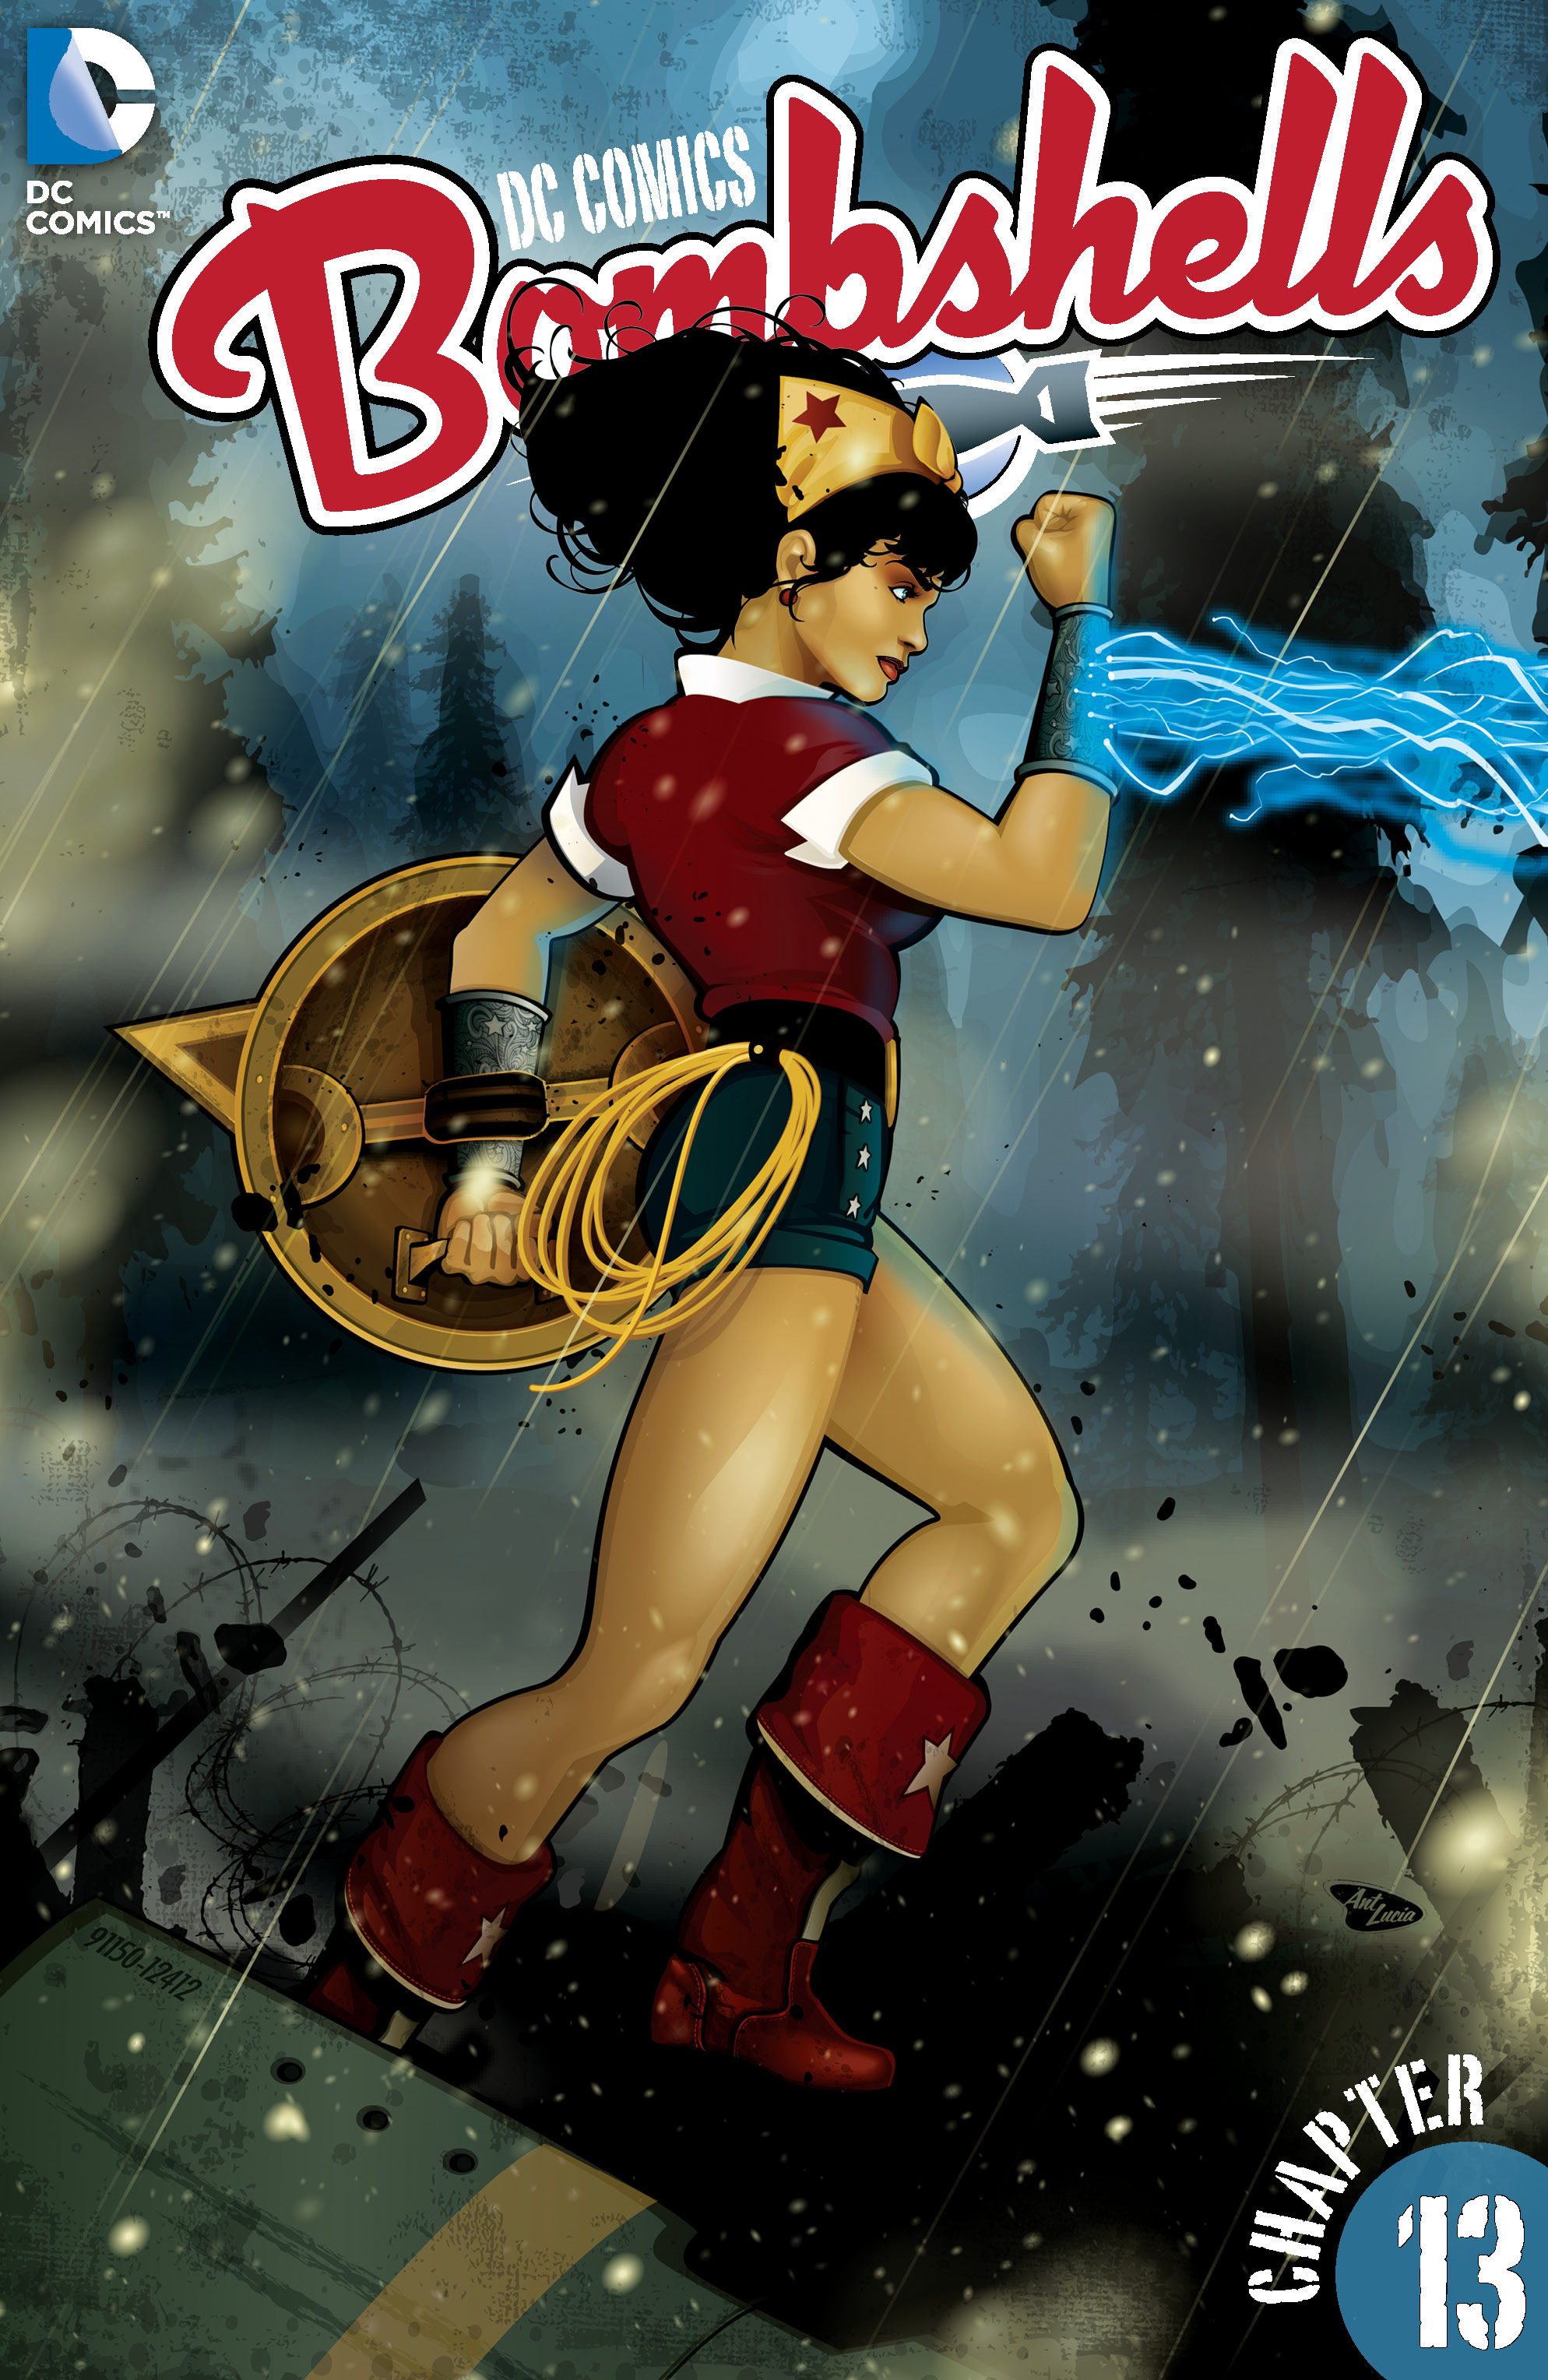 DC Comics: Bombshells #13 preview images